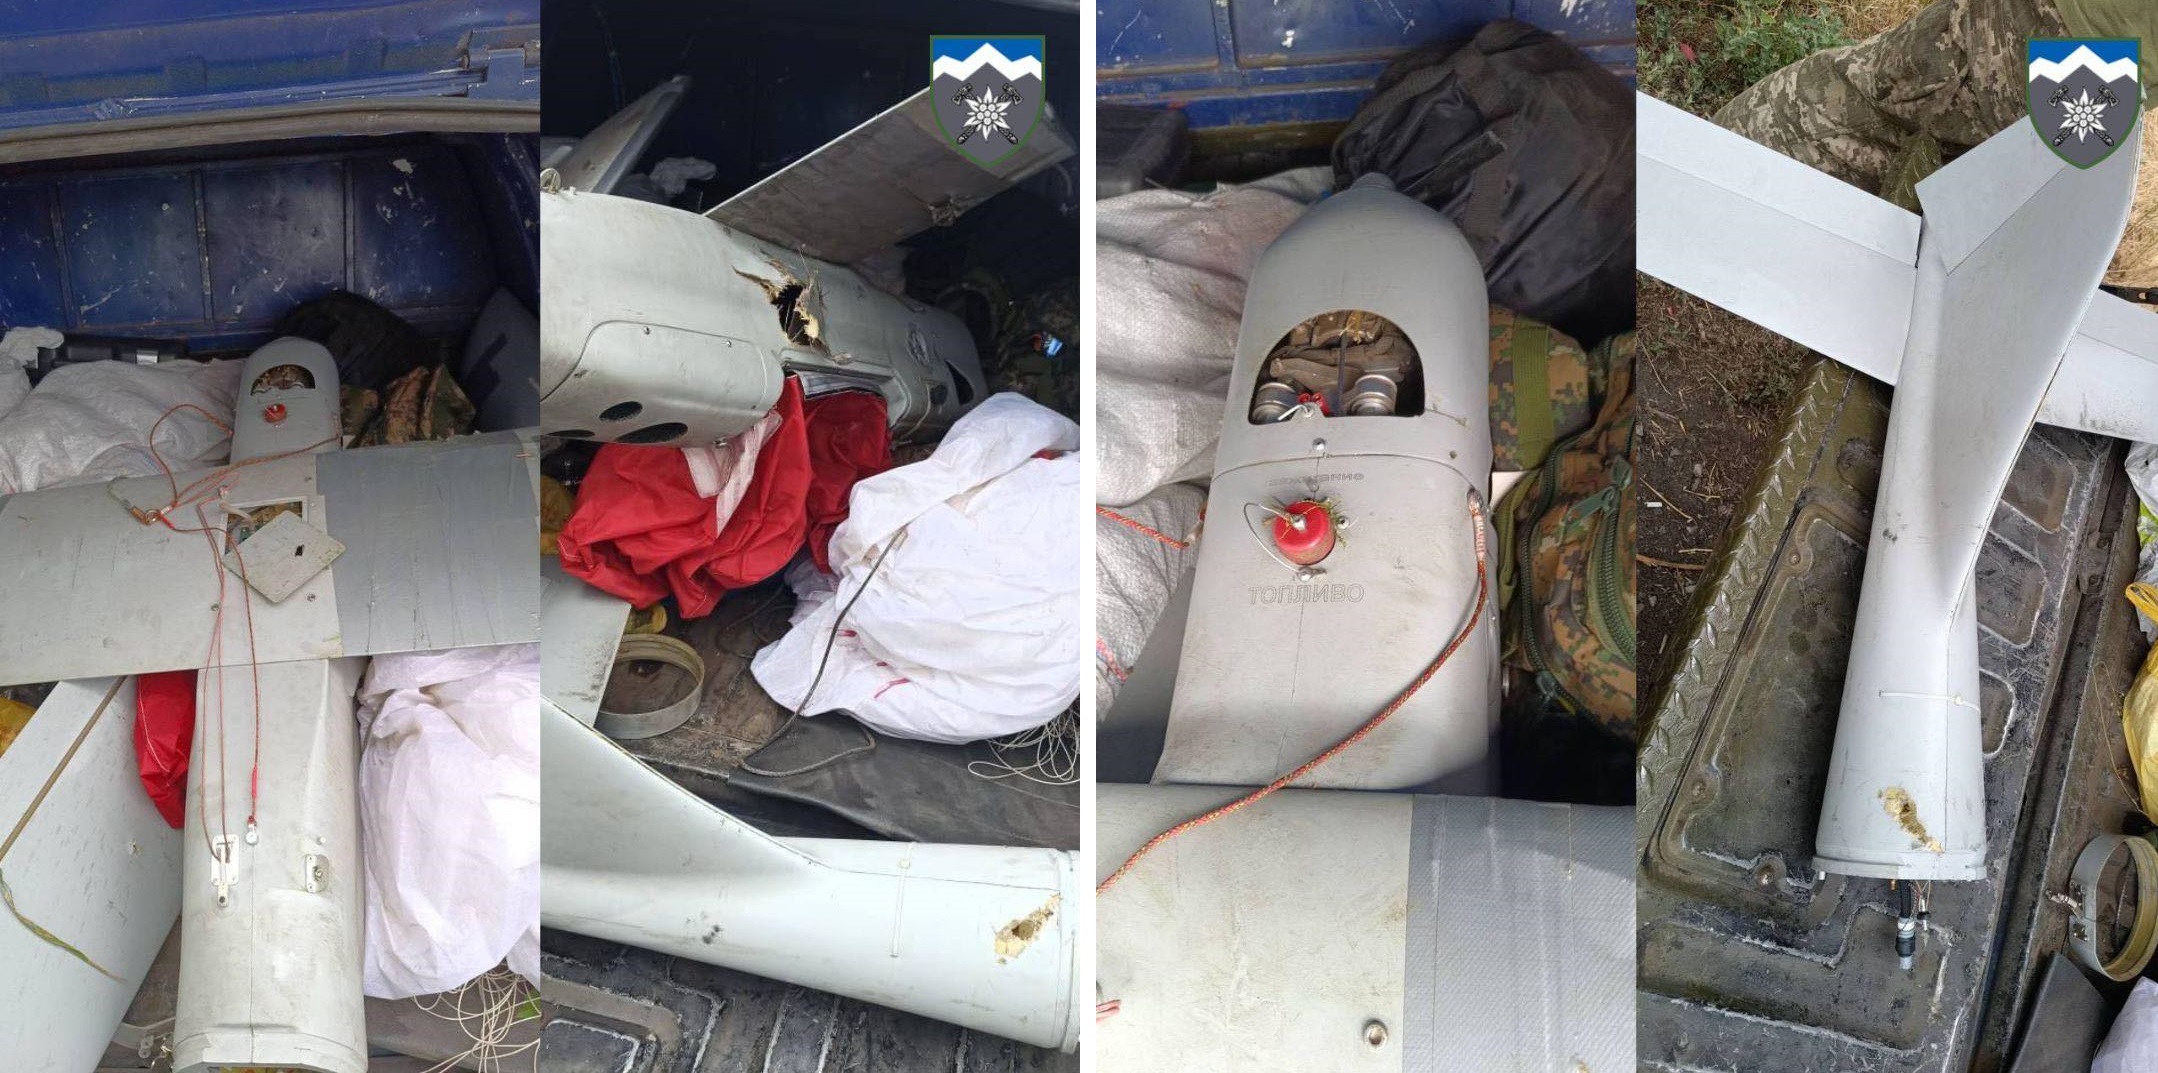 I guerrieri delle forze armate ucraine hanno abbattuto un drone da ricognizione russo con una bottiglia invece di un lato del carburante